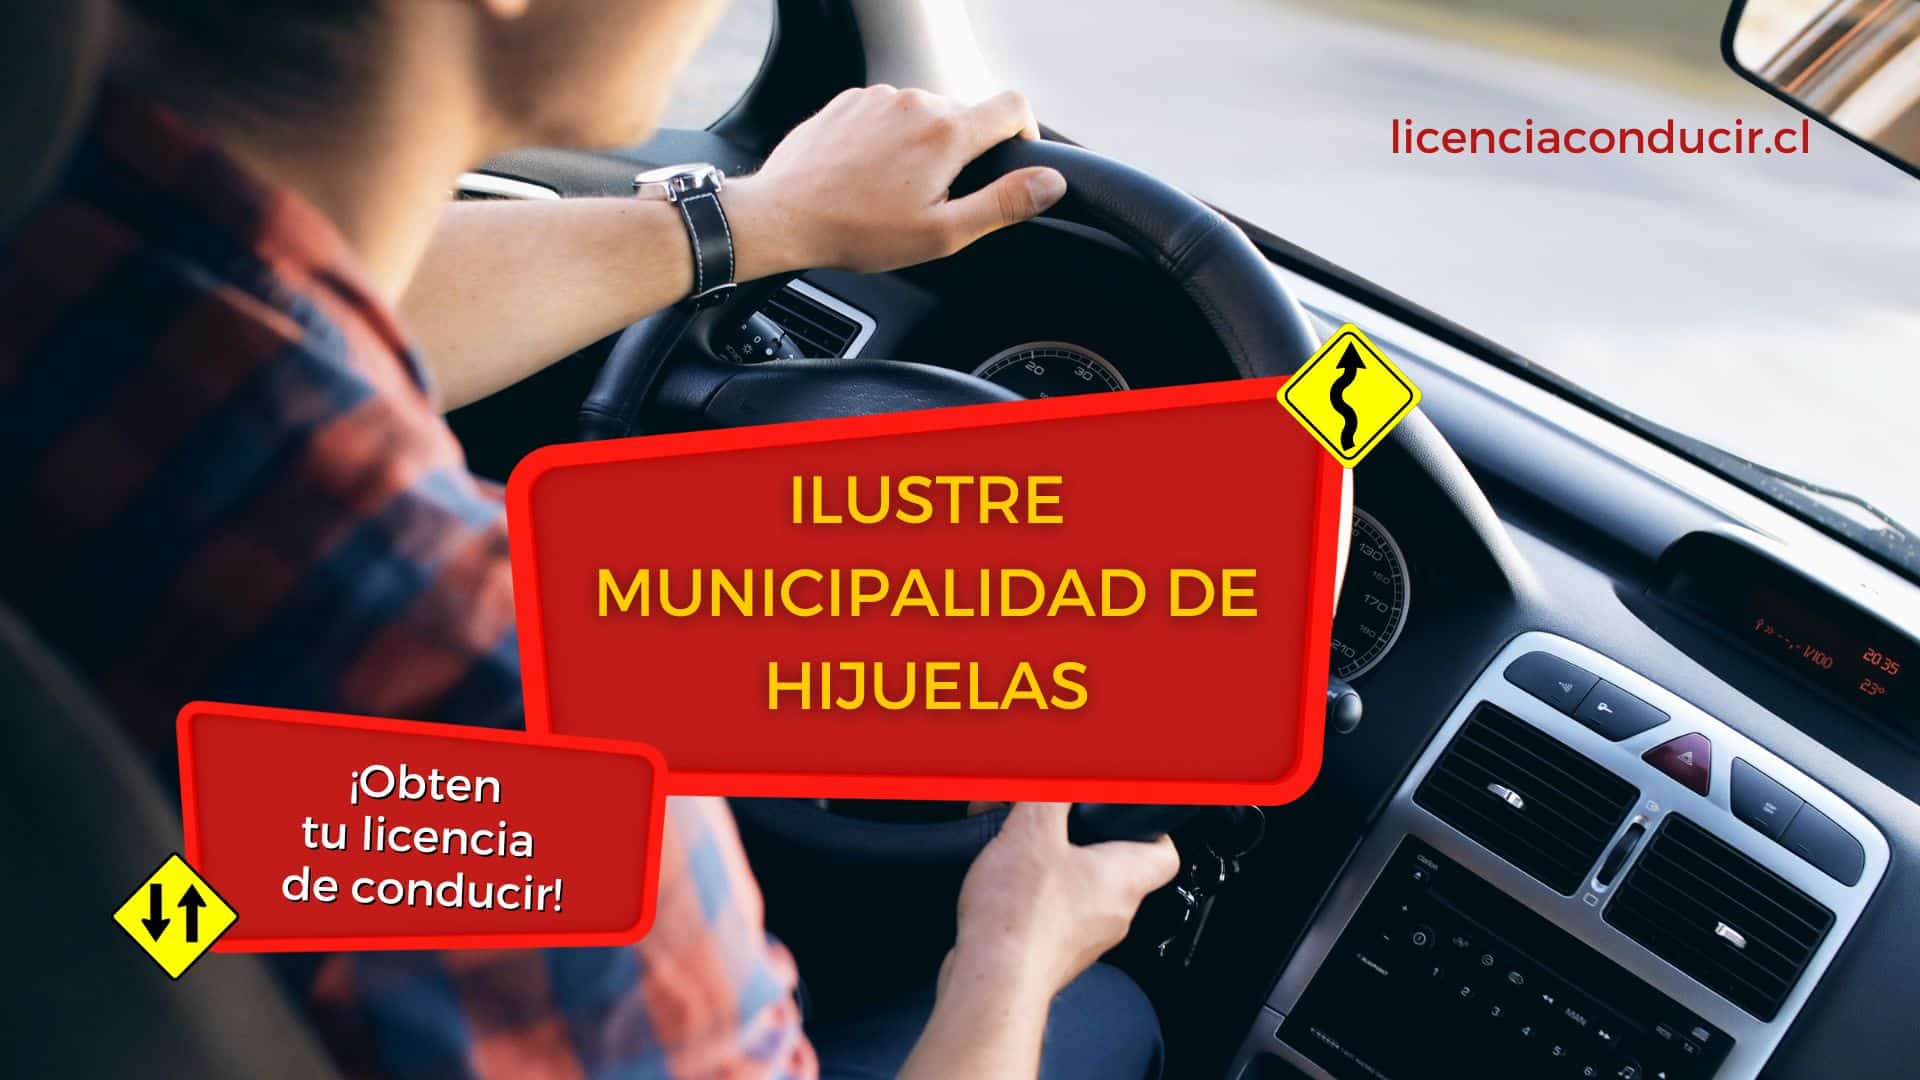 Obtener licencia conducir en hijuelas